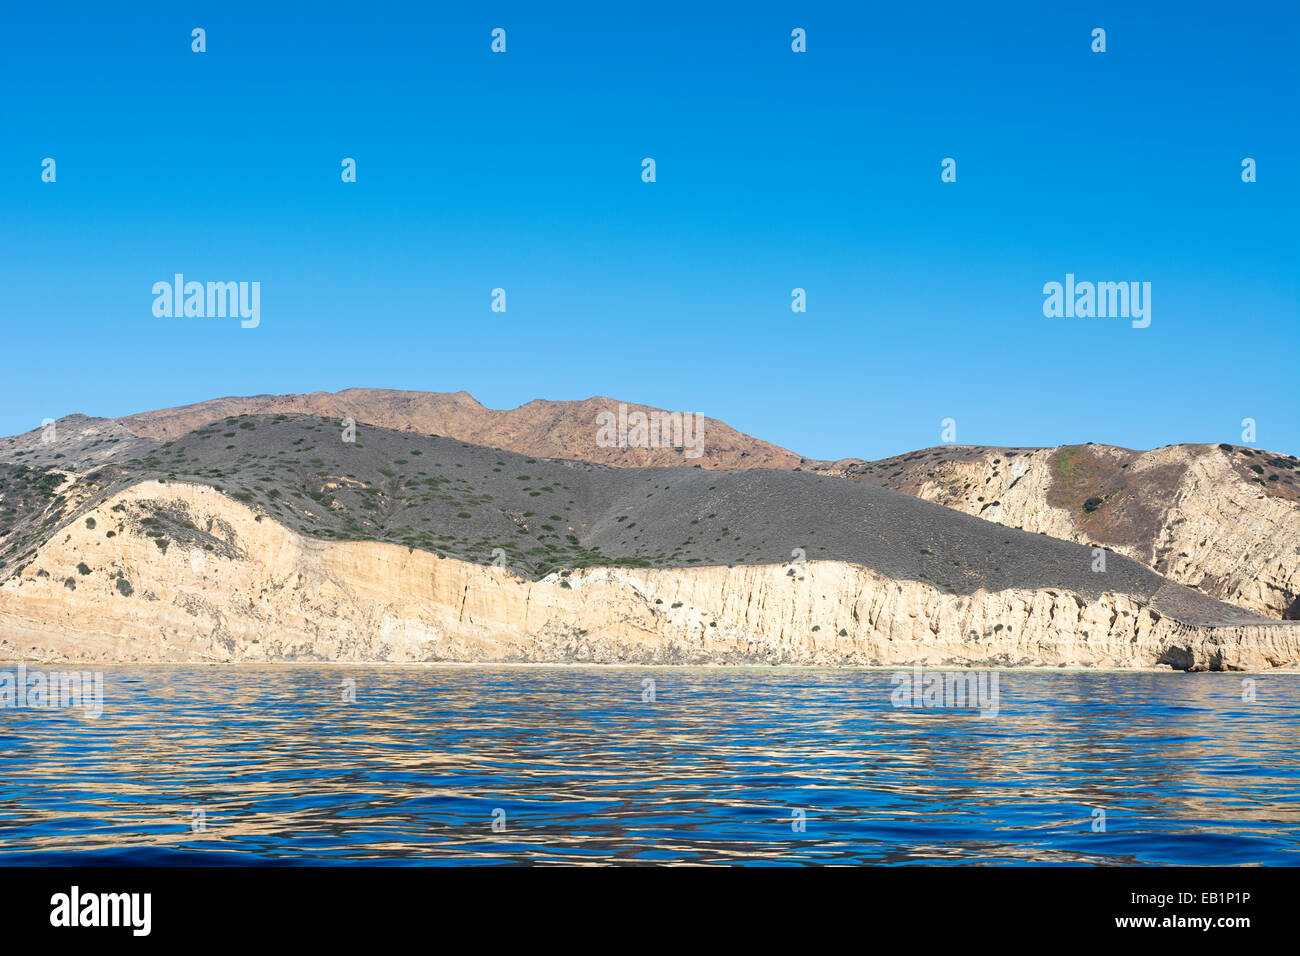 Une île isolée dans l'Channel Islands de Californie montre la géologie de terrain robuste et diversifiée contre l'encadré turquoise profond Banque D'Images